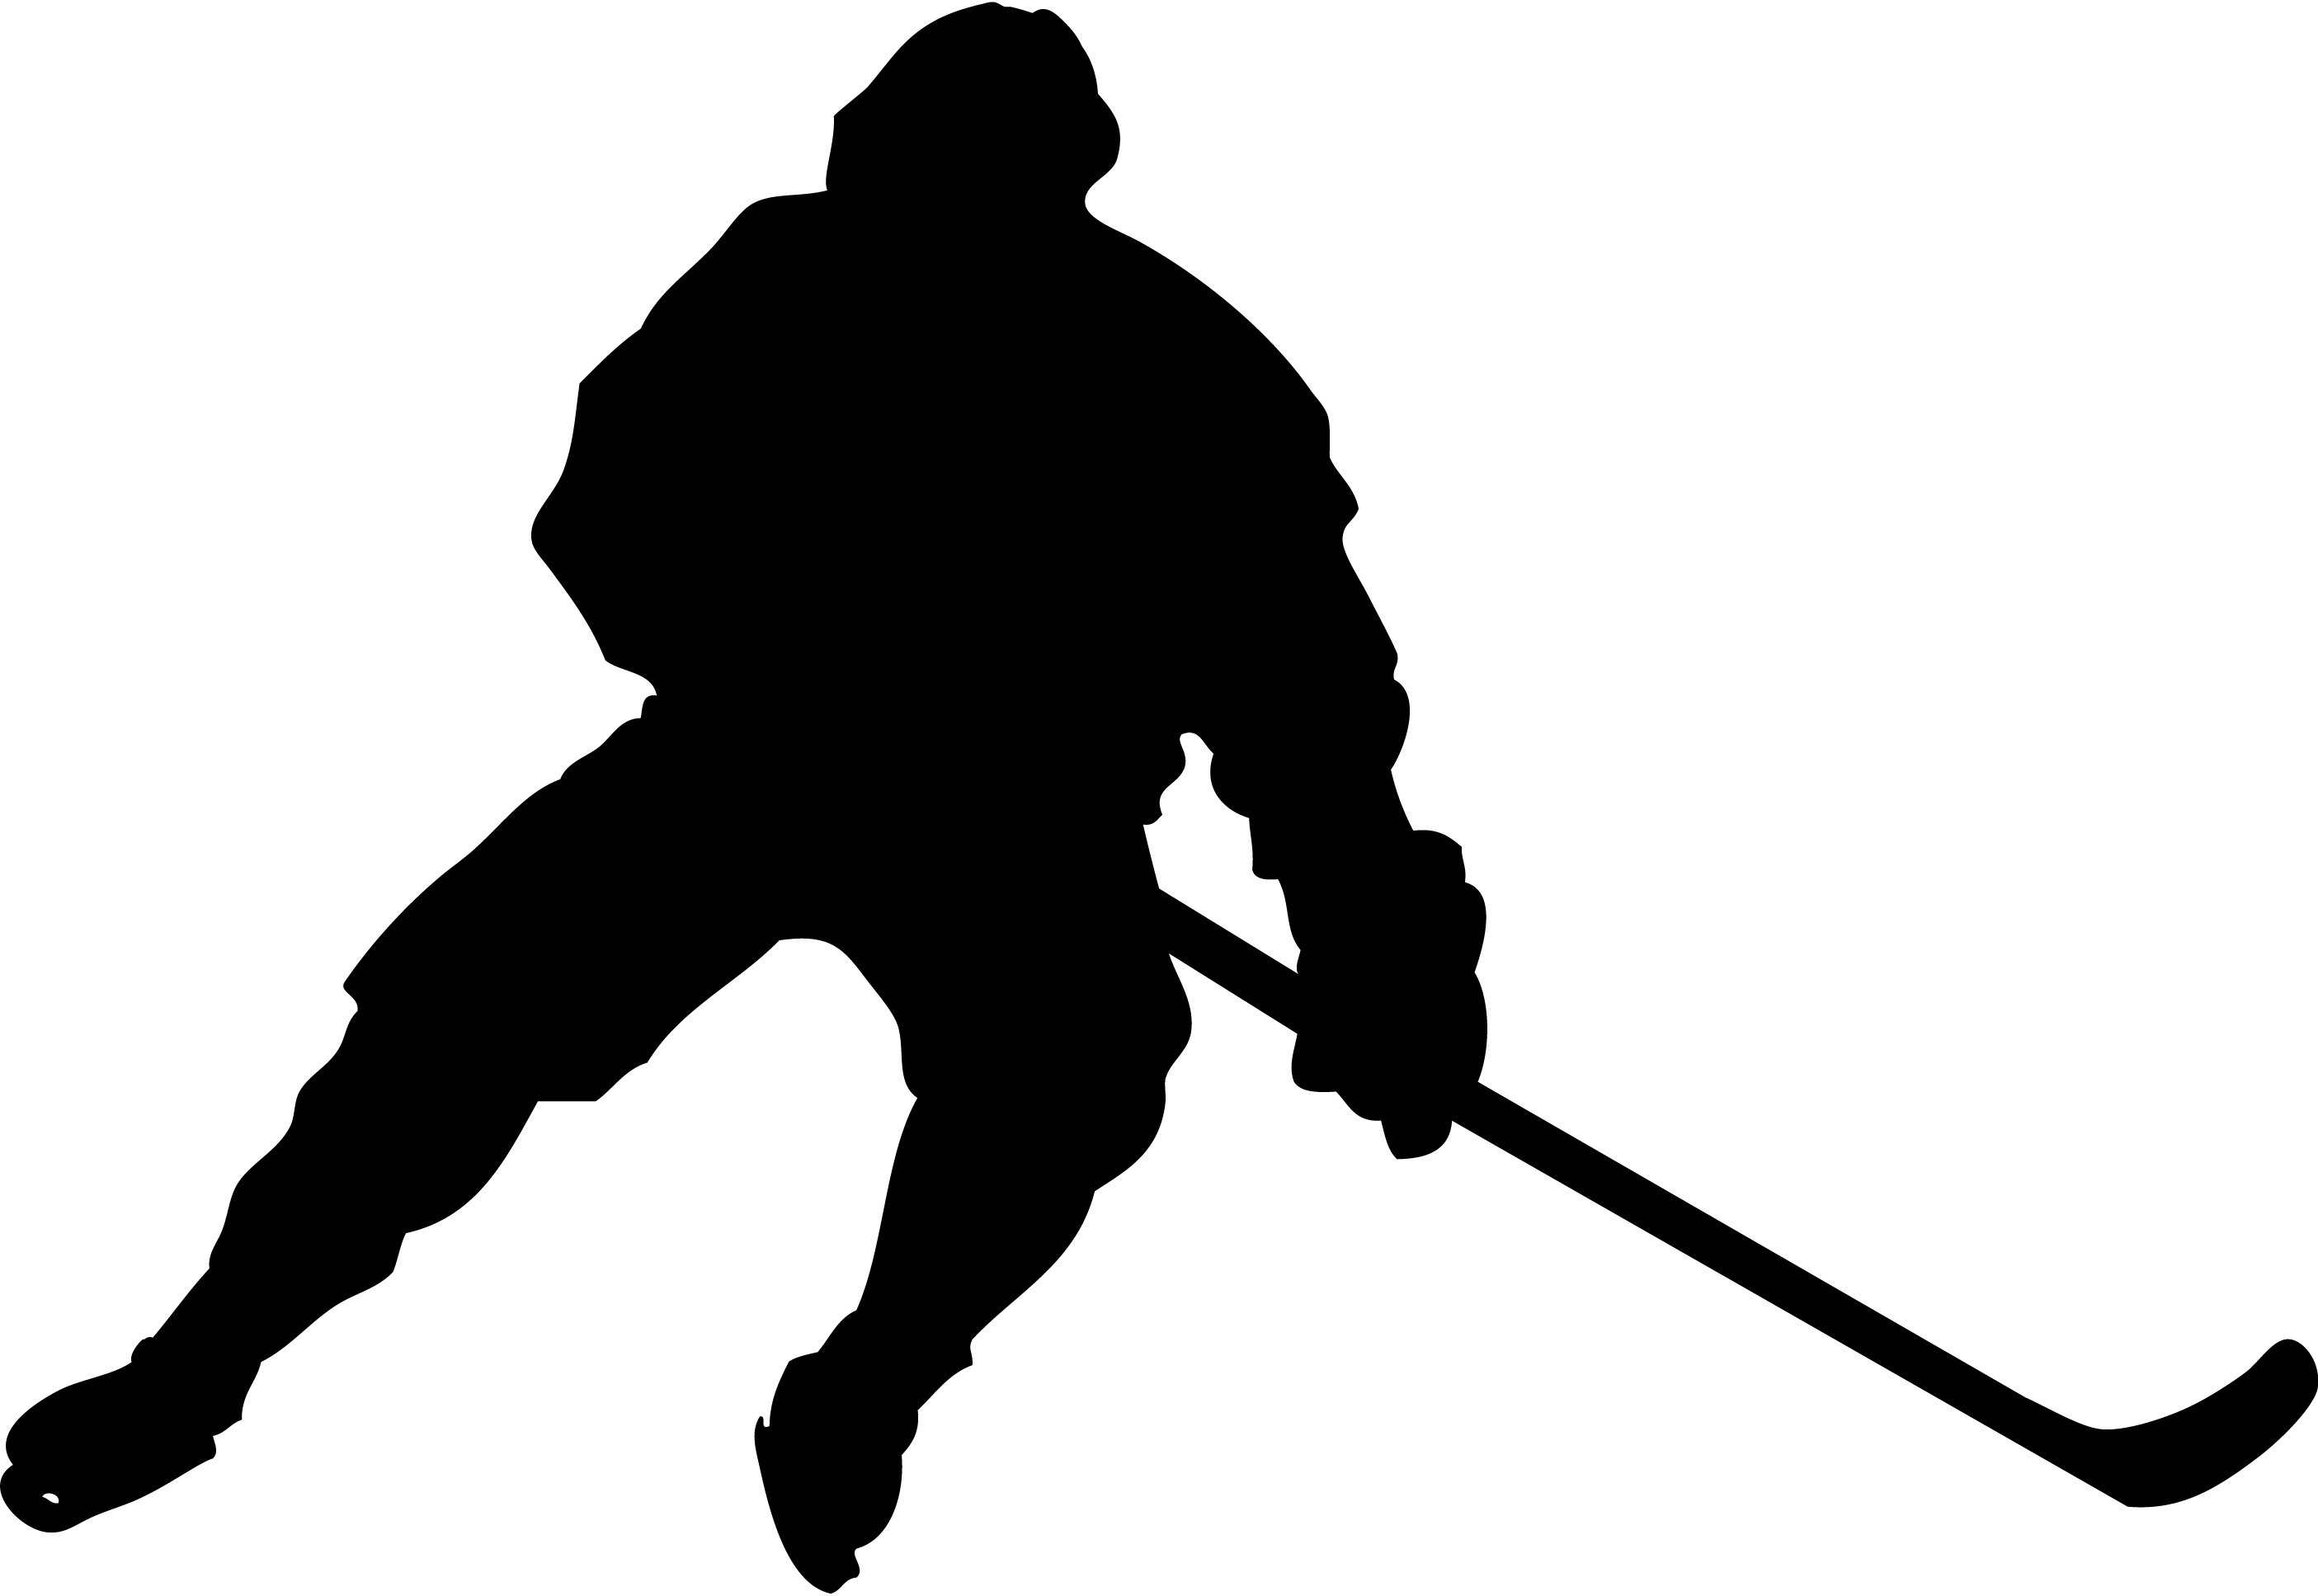 HockeyStrengthandConditioning.com